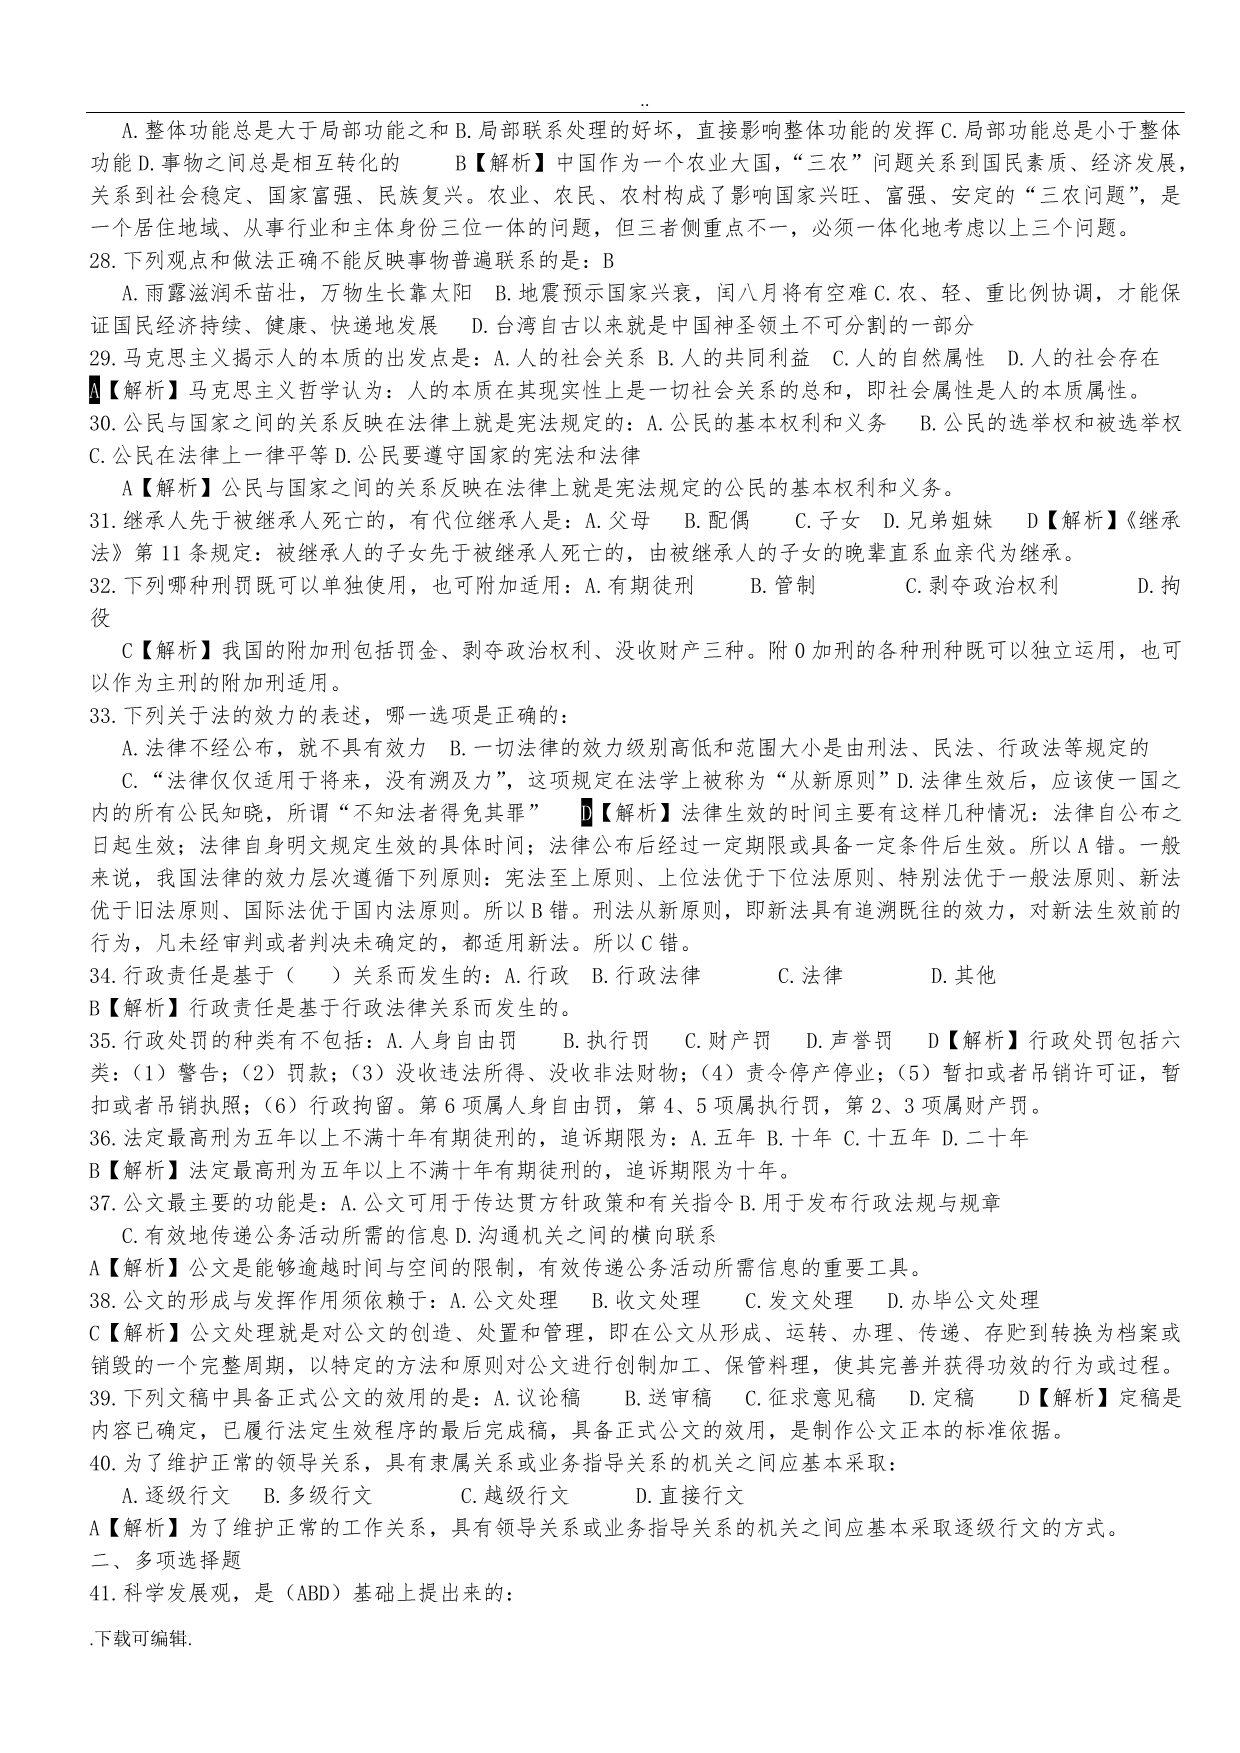 贵州省事业单位考试真题《公共基础知识》与答案解析(已编辑_可直接打印哦)_第3页